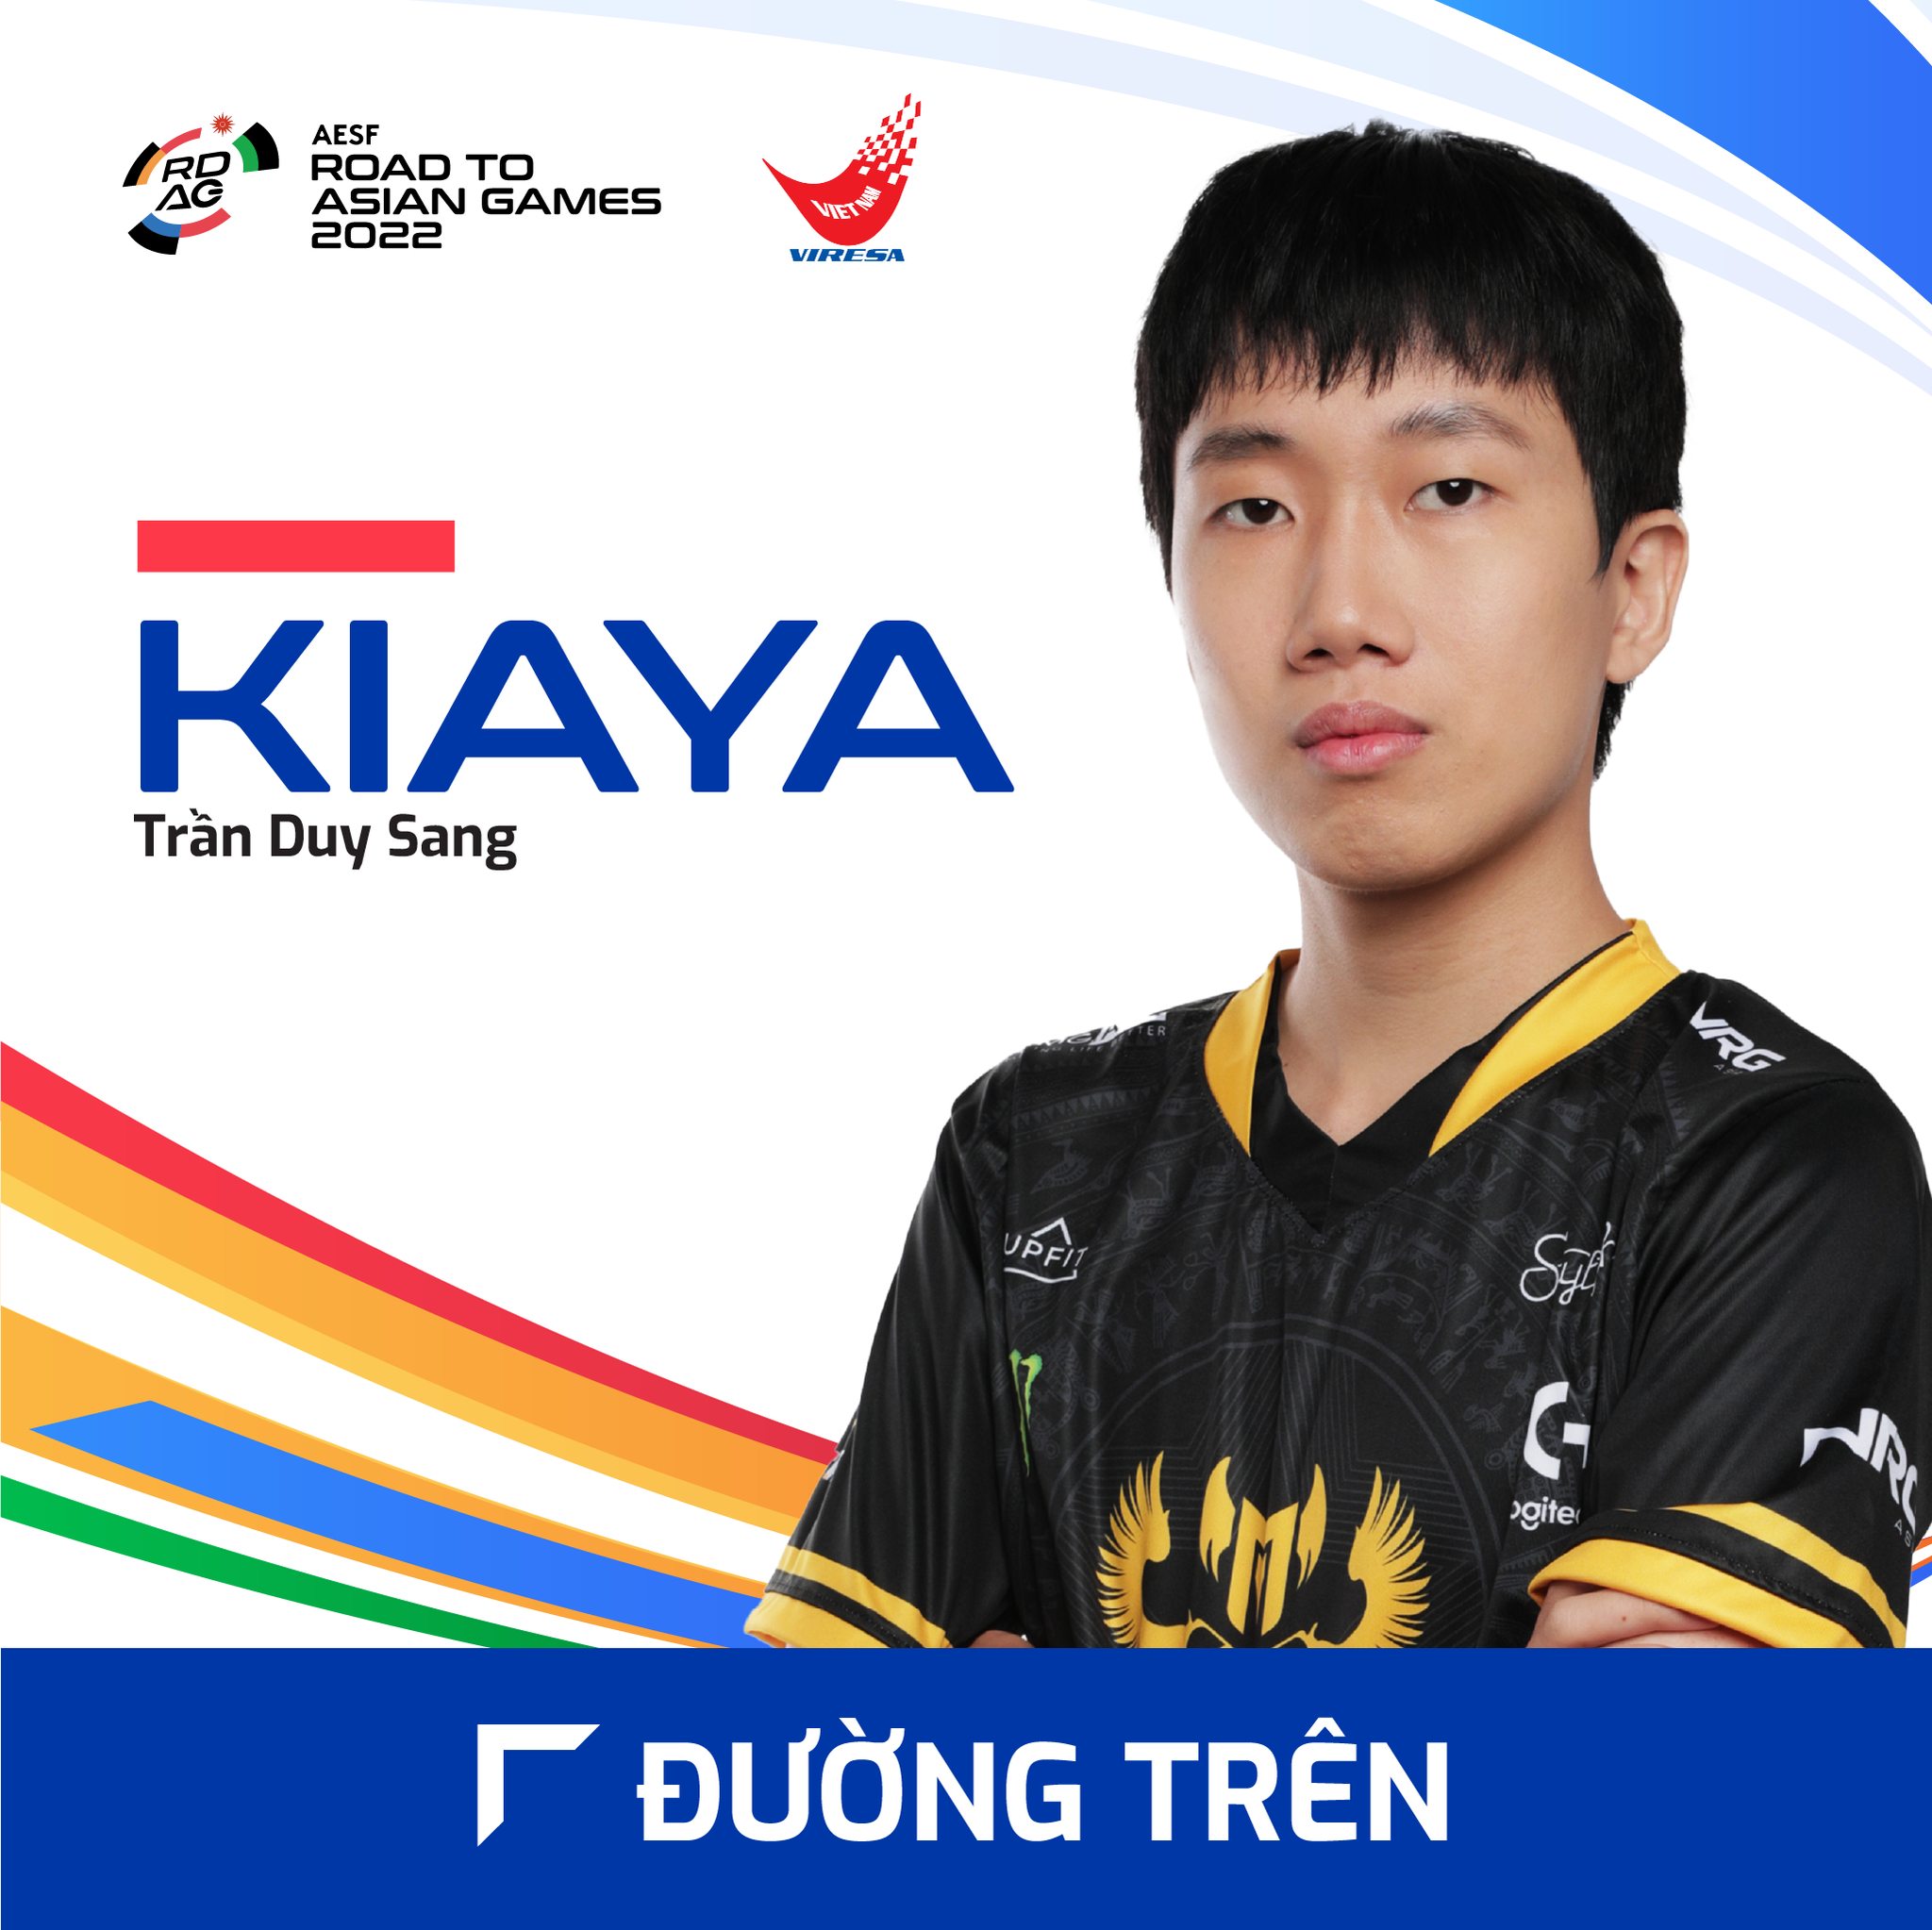 lo-dien-doi-tuyen-quoc-gia-lien-minh-huyen-thoai-viet-nam-tai-road-to-asian-games-2022-duong-tren-kiaya